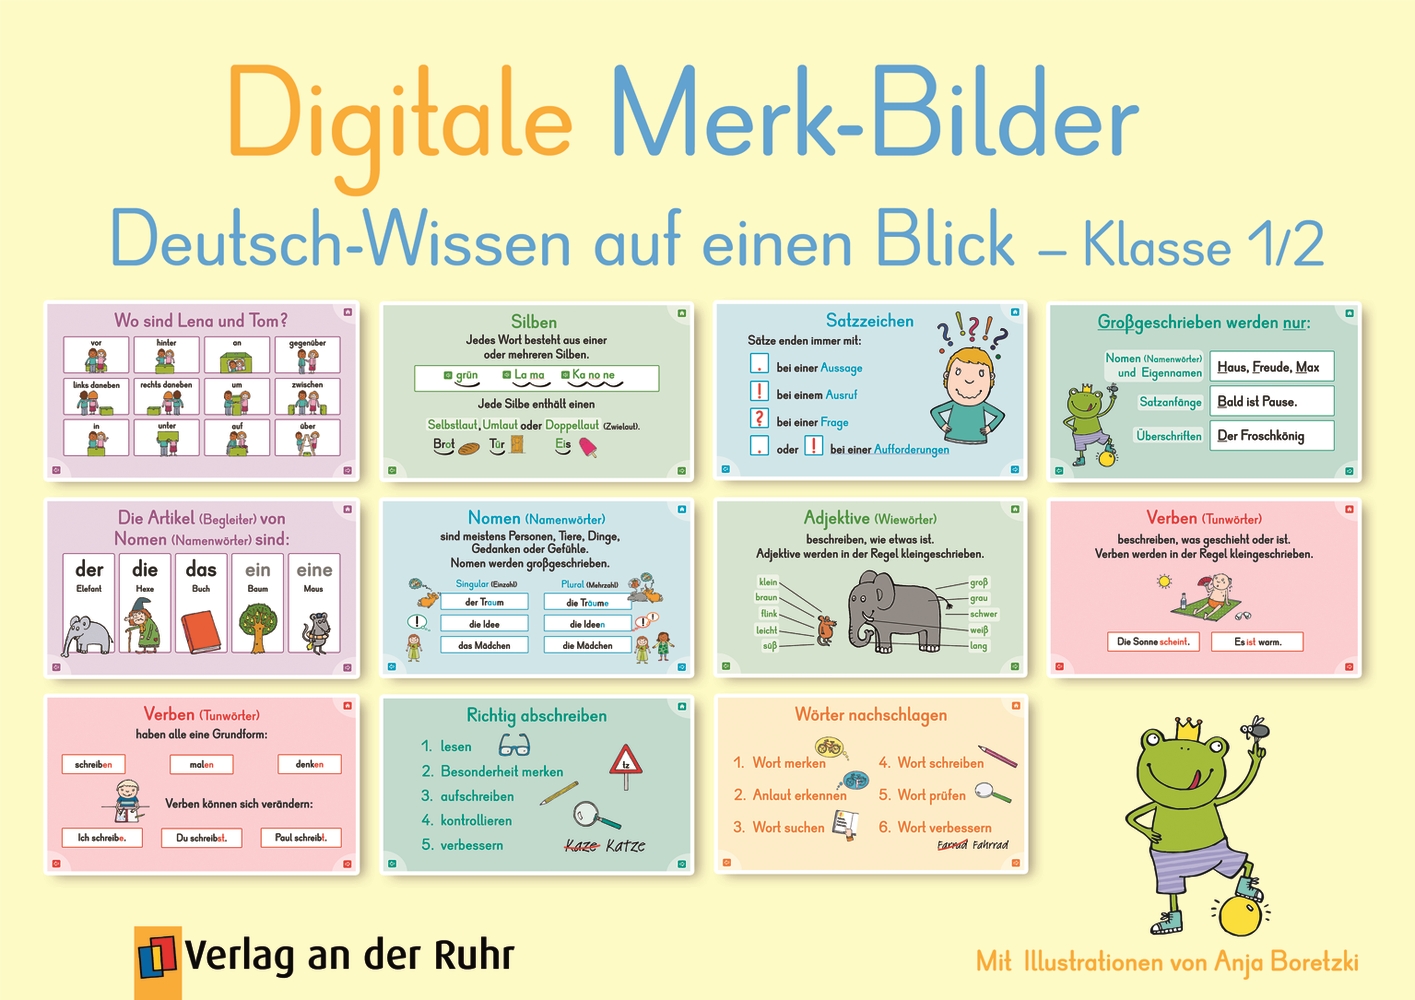 Digitale Merk-Bilder - Deutsch-Wissen auf einen Blick, Klasse 1/2 - Pro-Lizenz - Online